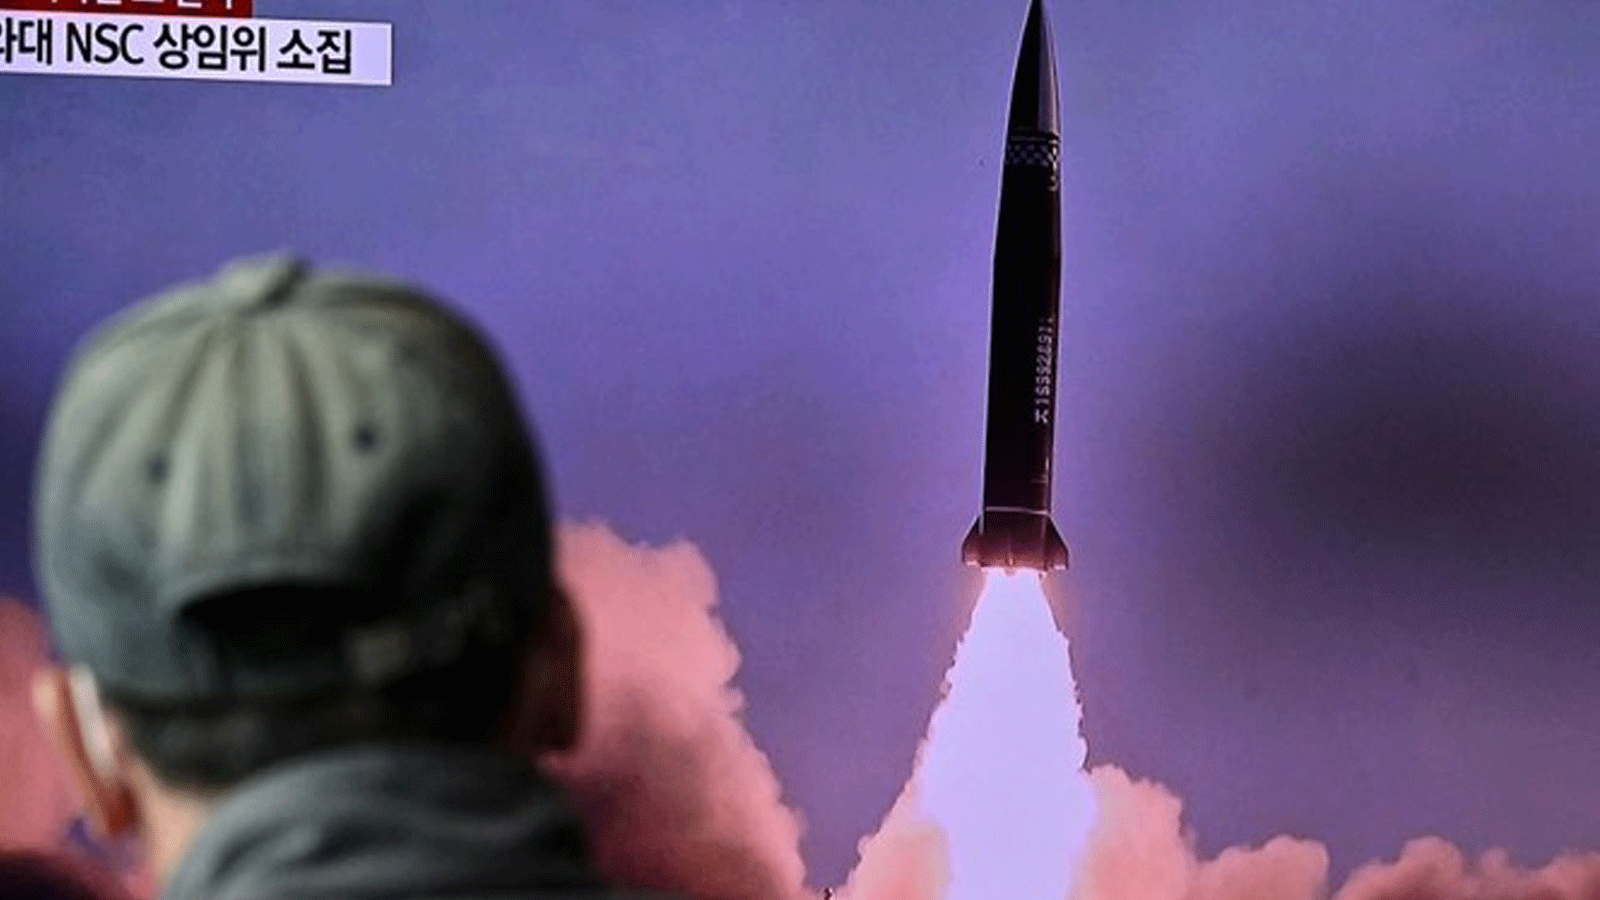 واشنطن تدين إطلاق الصاروخ الكوري الشمالي وتدعو إلى الحوار